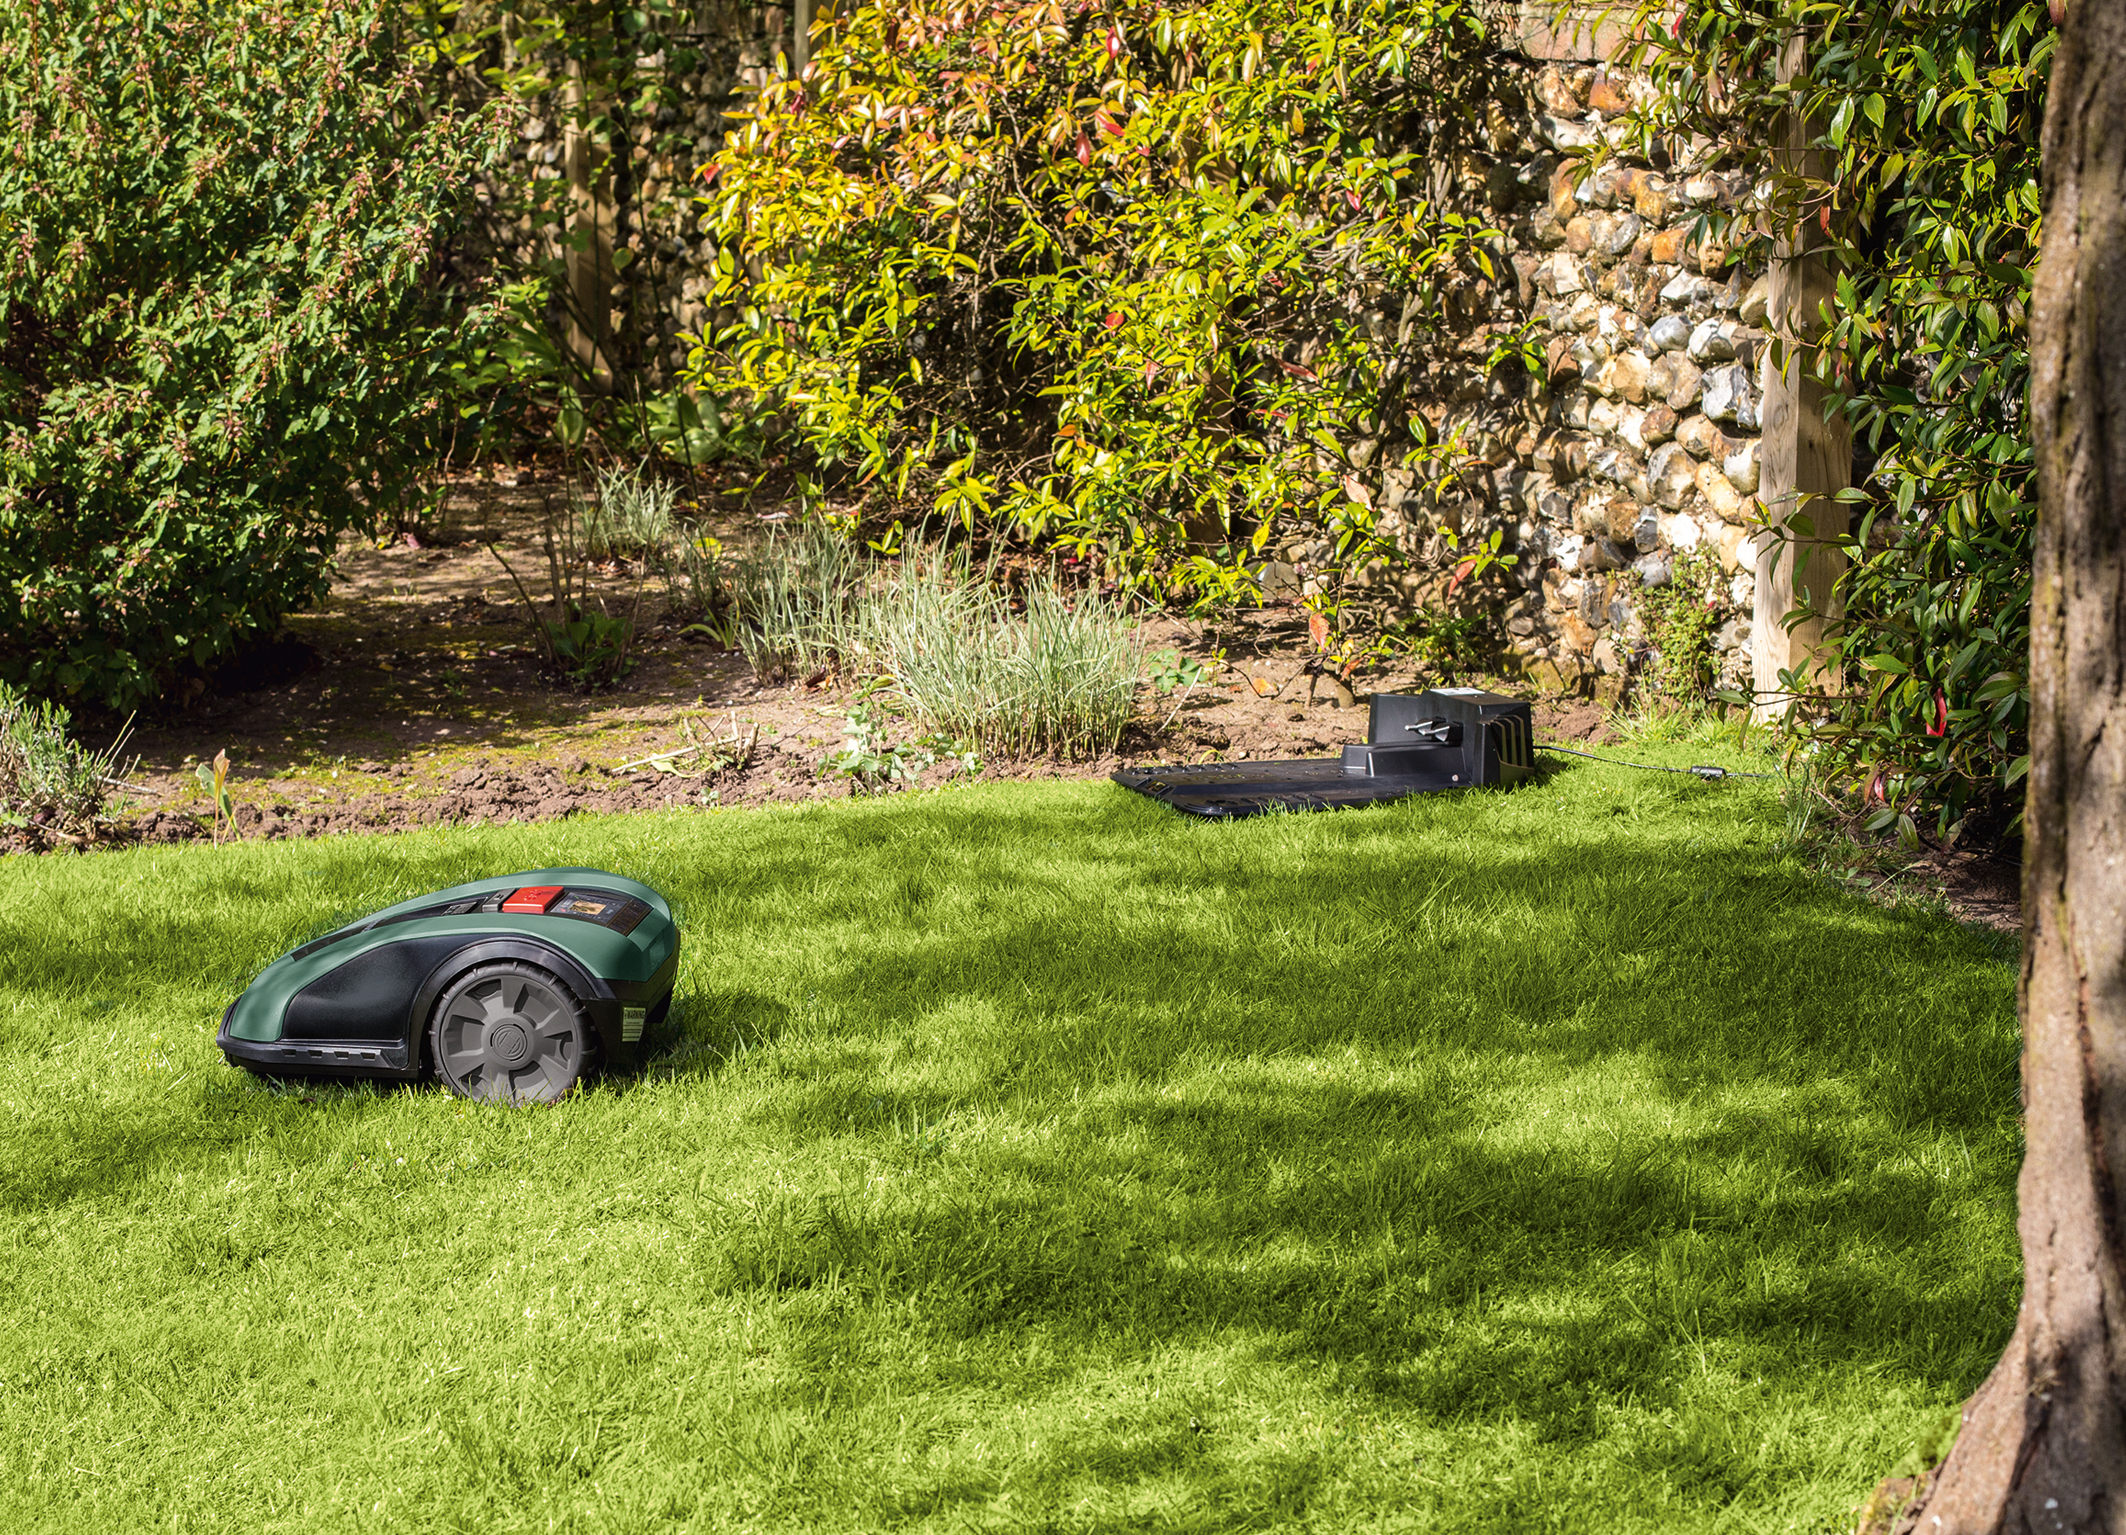 Hoher Mehrwert durch genaue Vermessung der Rasenfläche: Bosch Roboter-Mäher Indego M 700 und Indego M+ 700